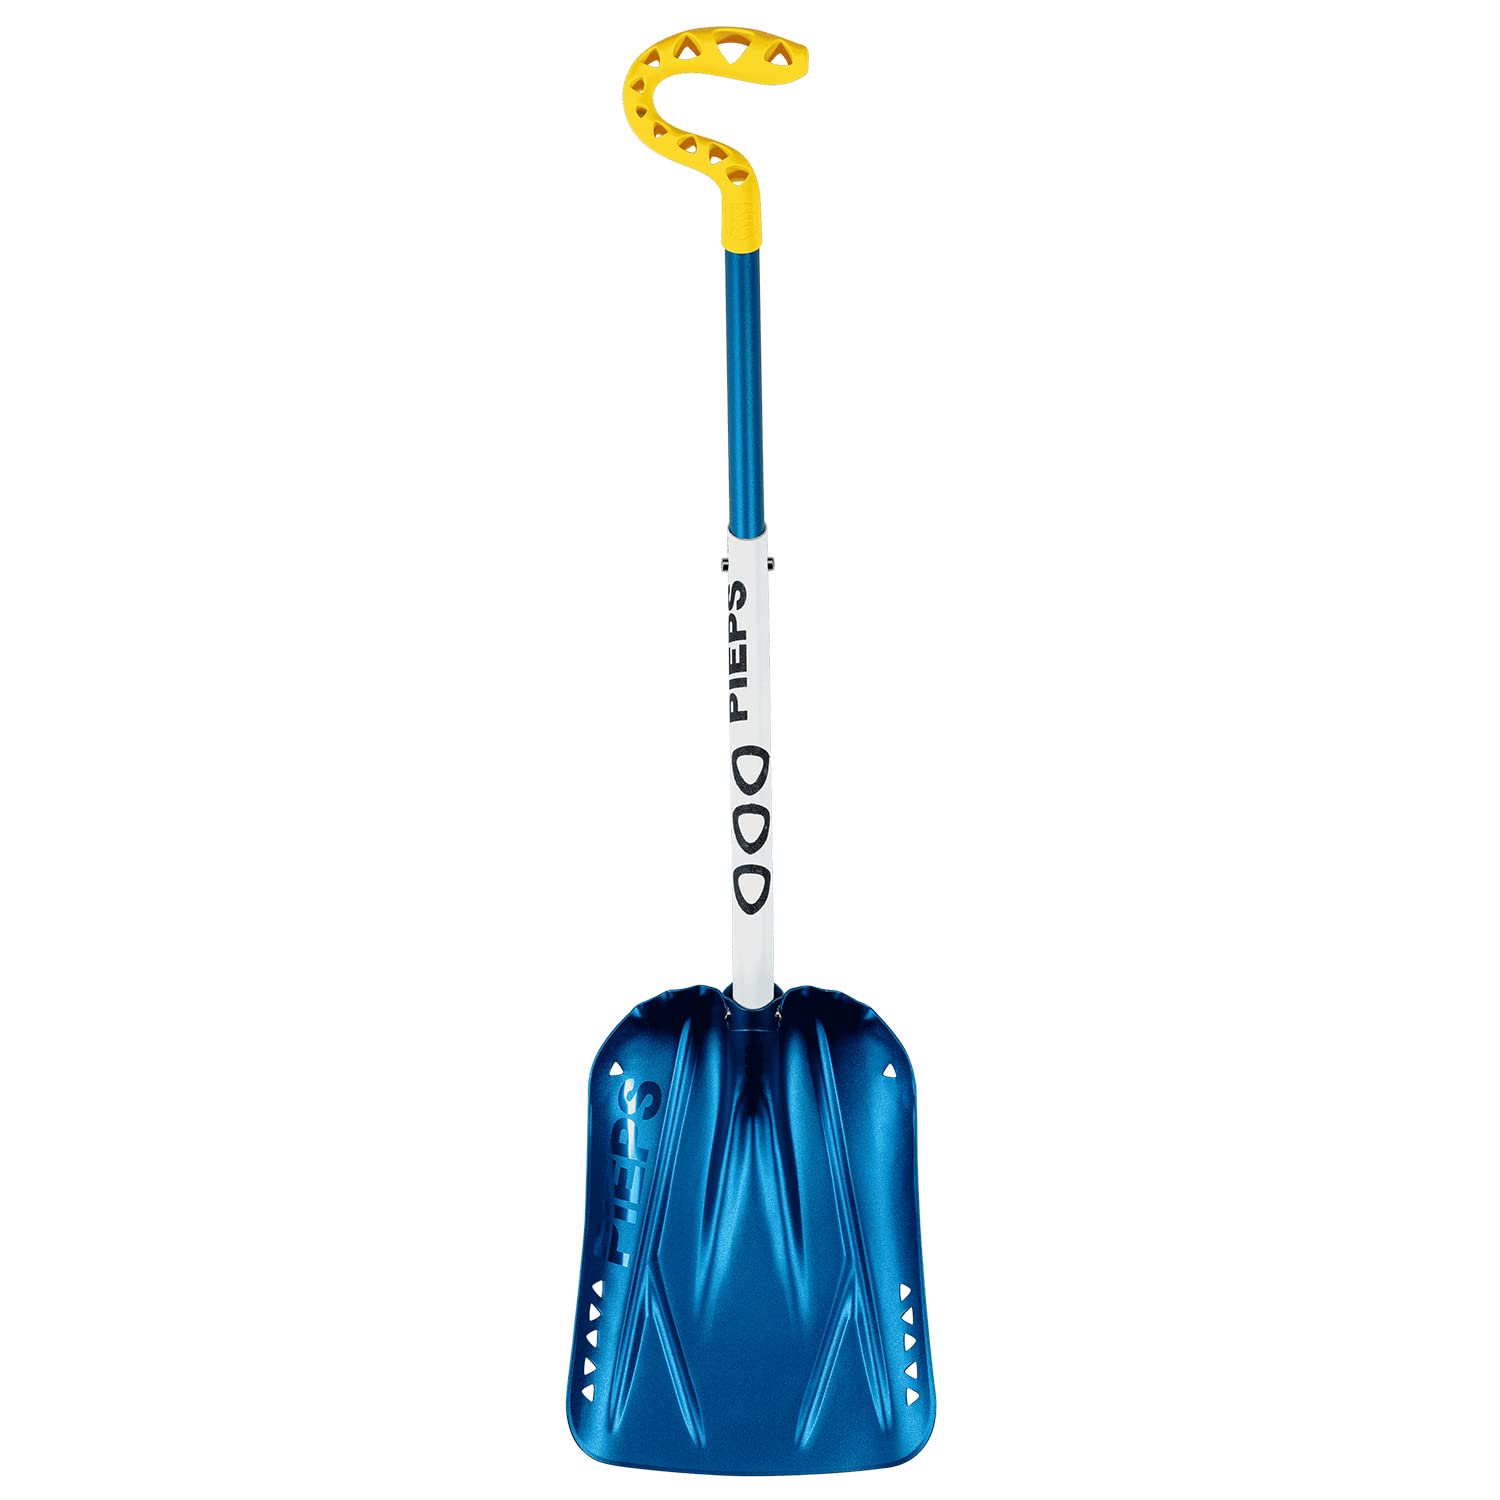 Pieps Shovel C 660 Gesamtlänge: 88 cm Farbe: Blue/White